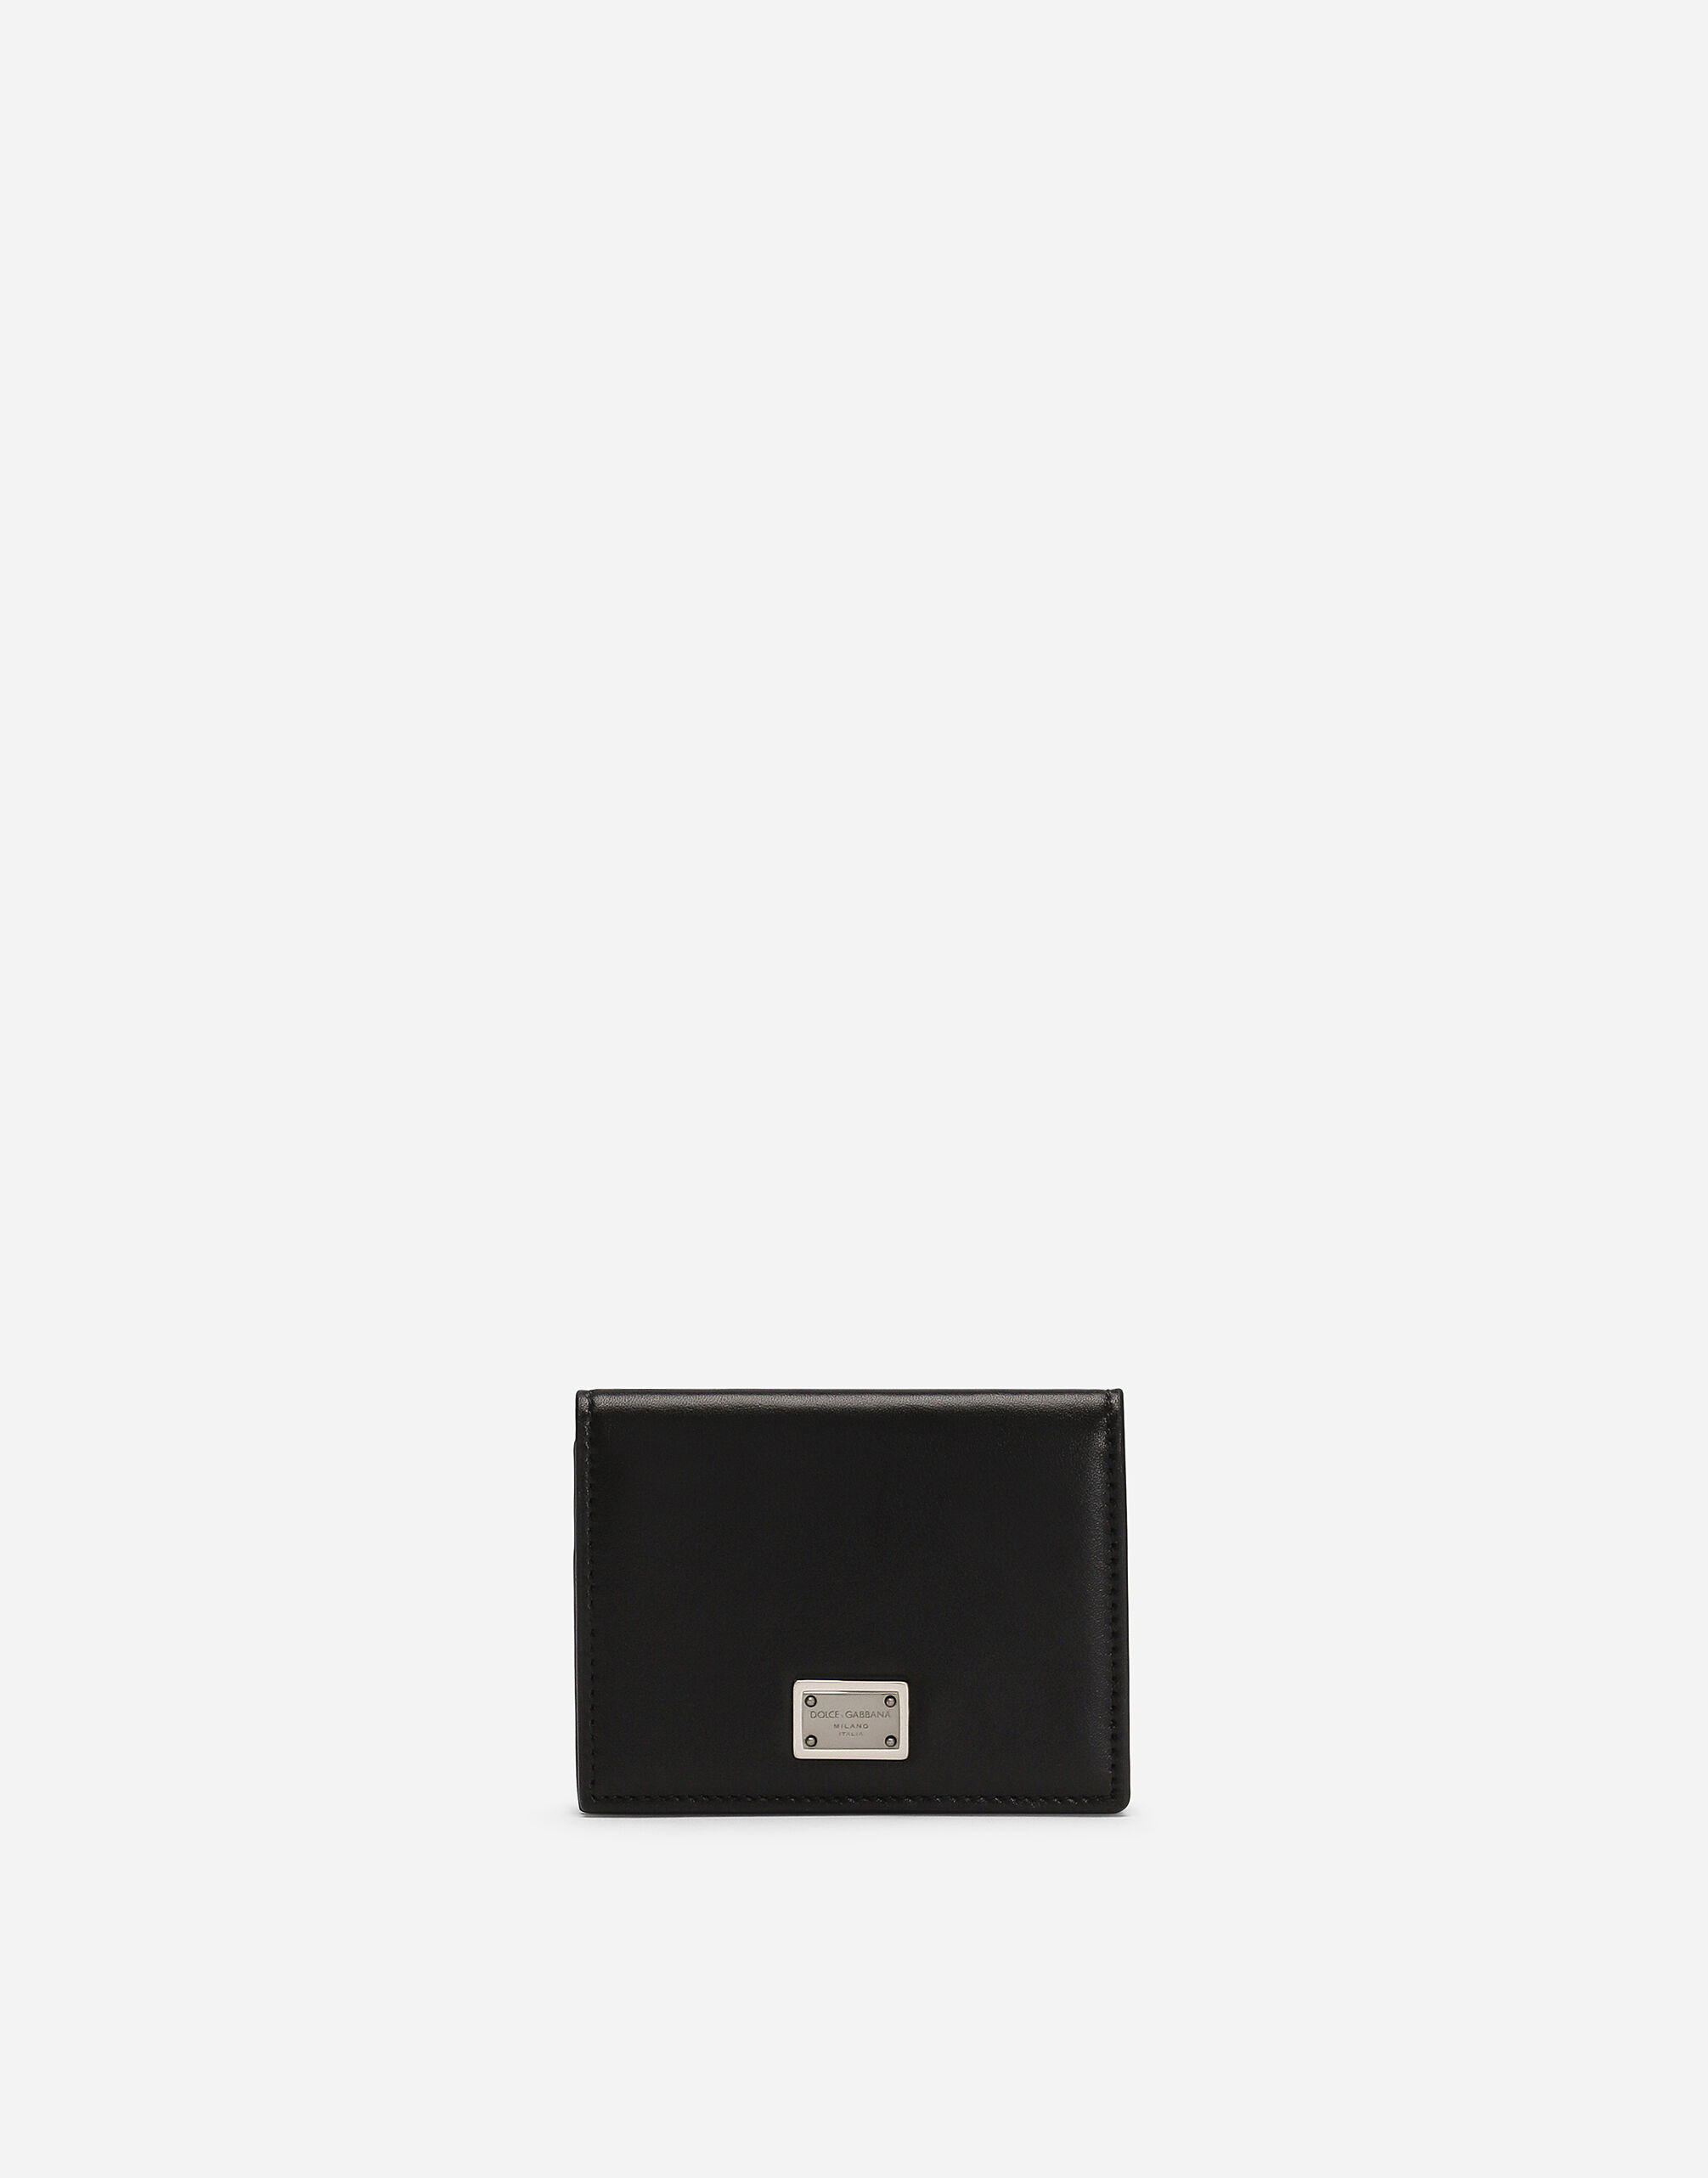 Dolce & Gabbana カードケース カーフスキン 日本限定 マルチカラー BP3271AS527